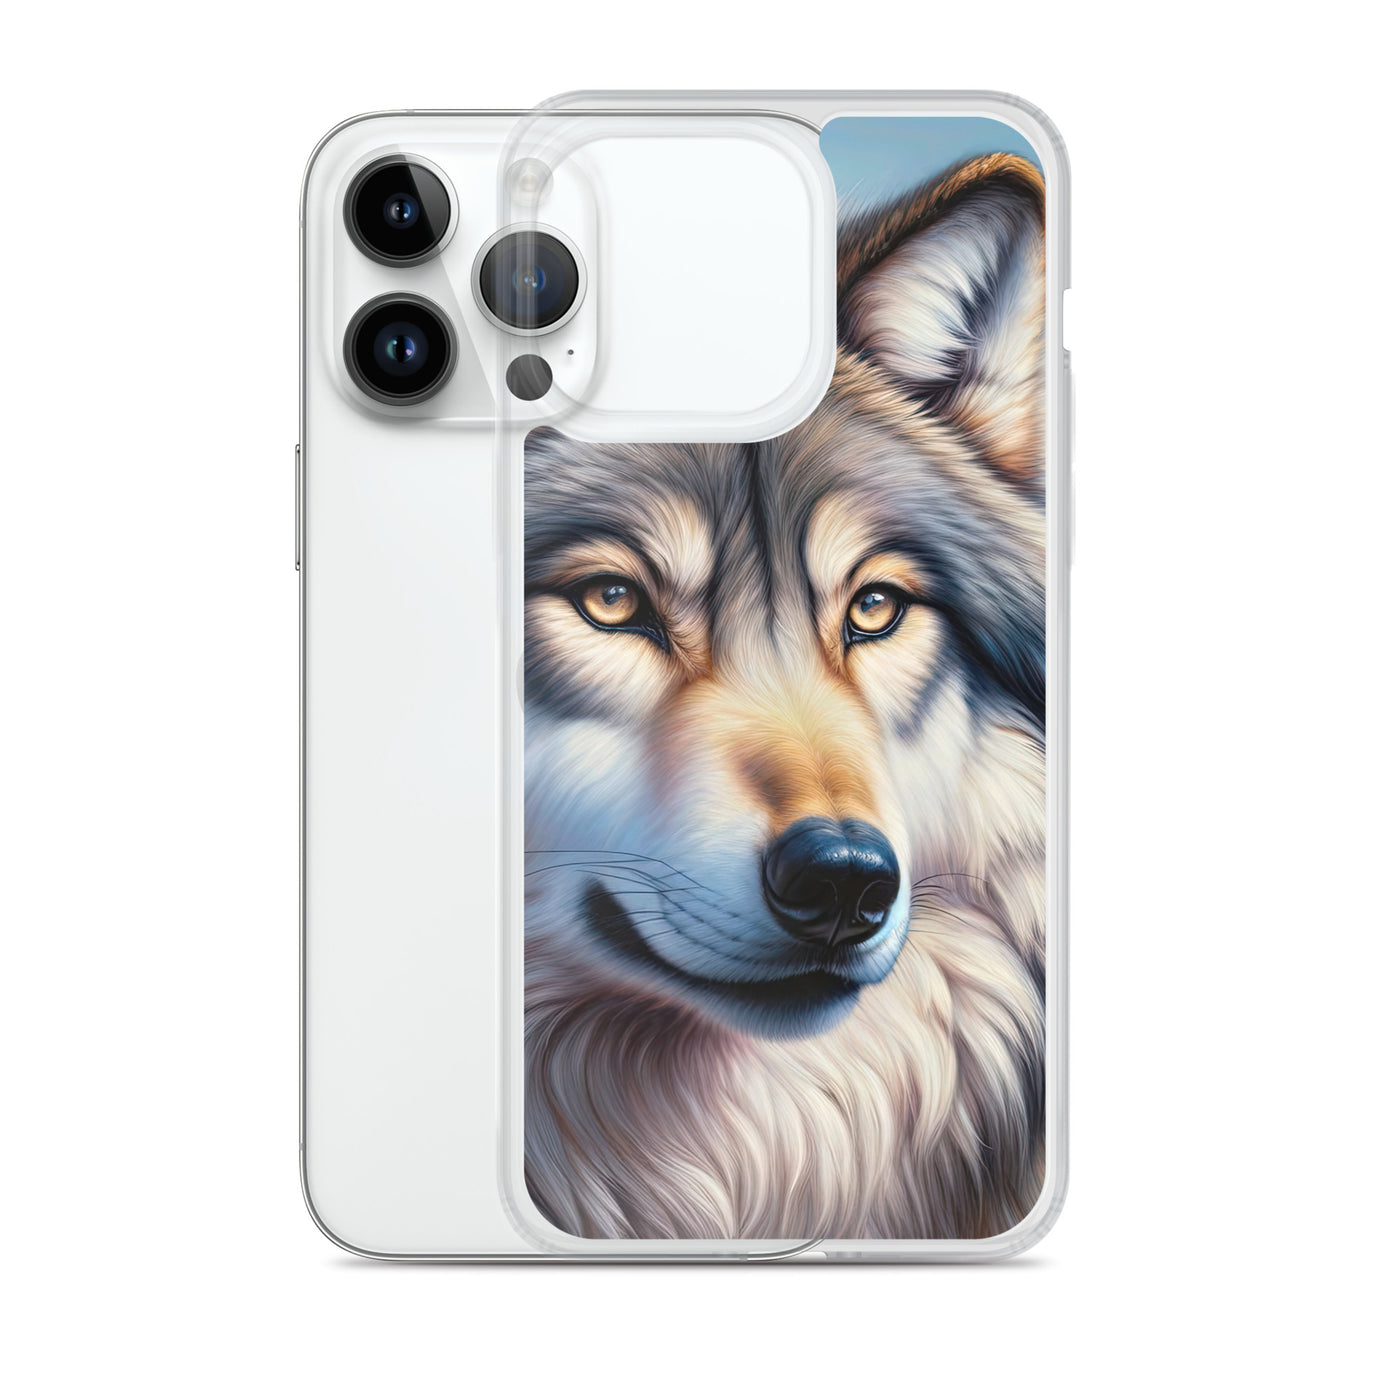 Ölgemäldeporträt eines majestätischen Wolfes mit intensiven Augen in der Berglandschaft (AN) - iPhone Schutzhülle (durchsichtig) xxx yyy zzz